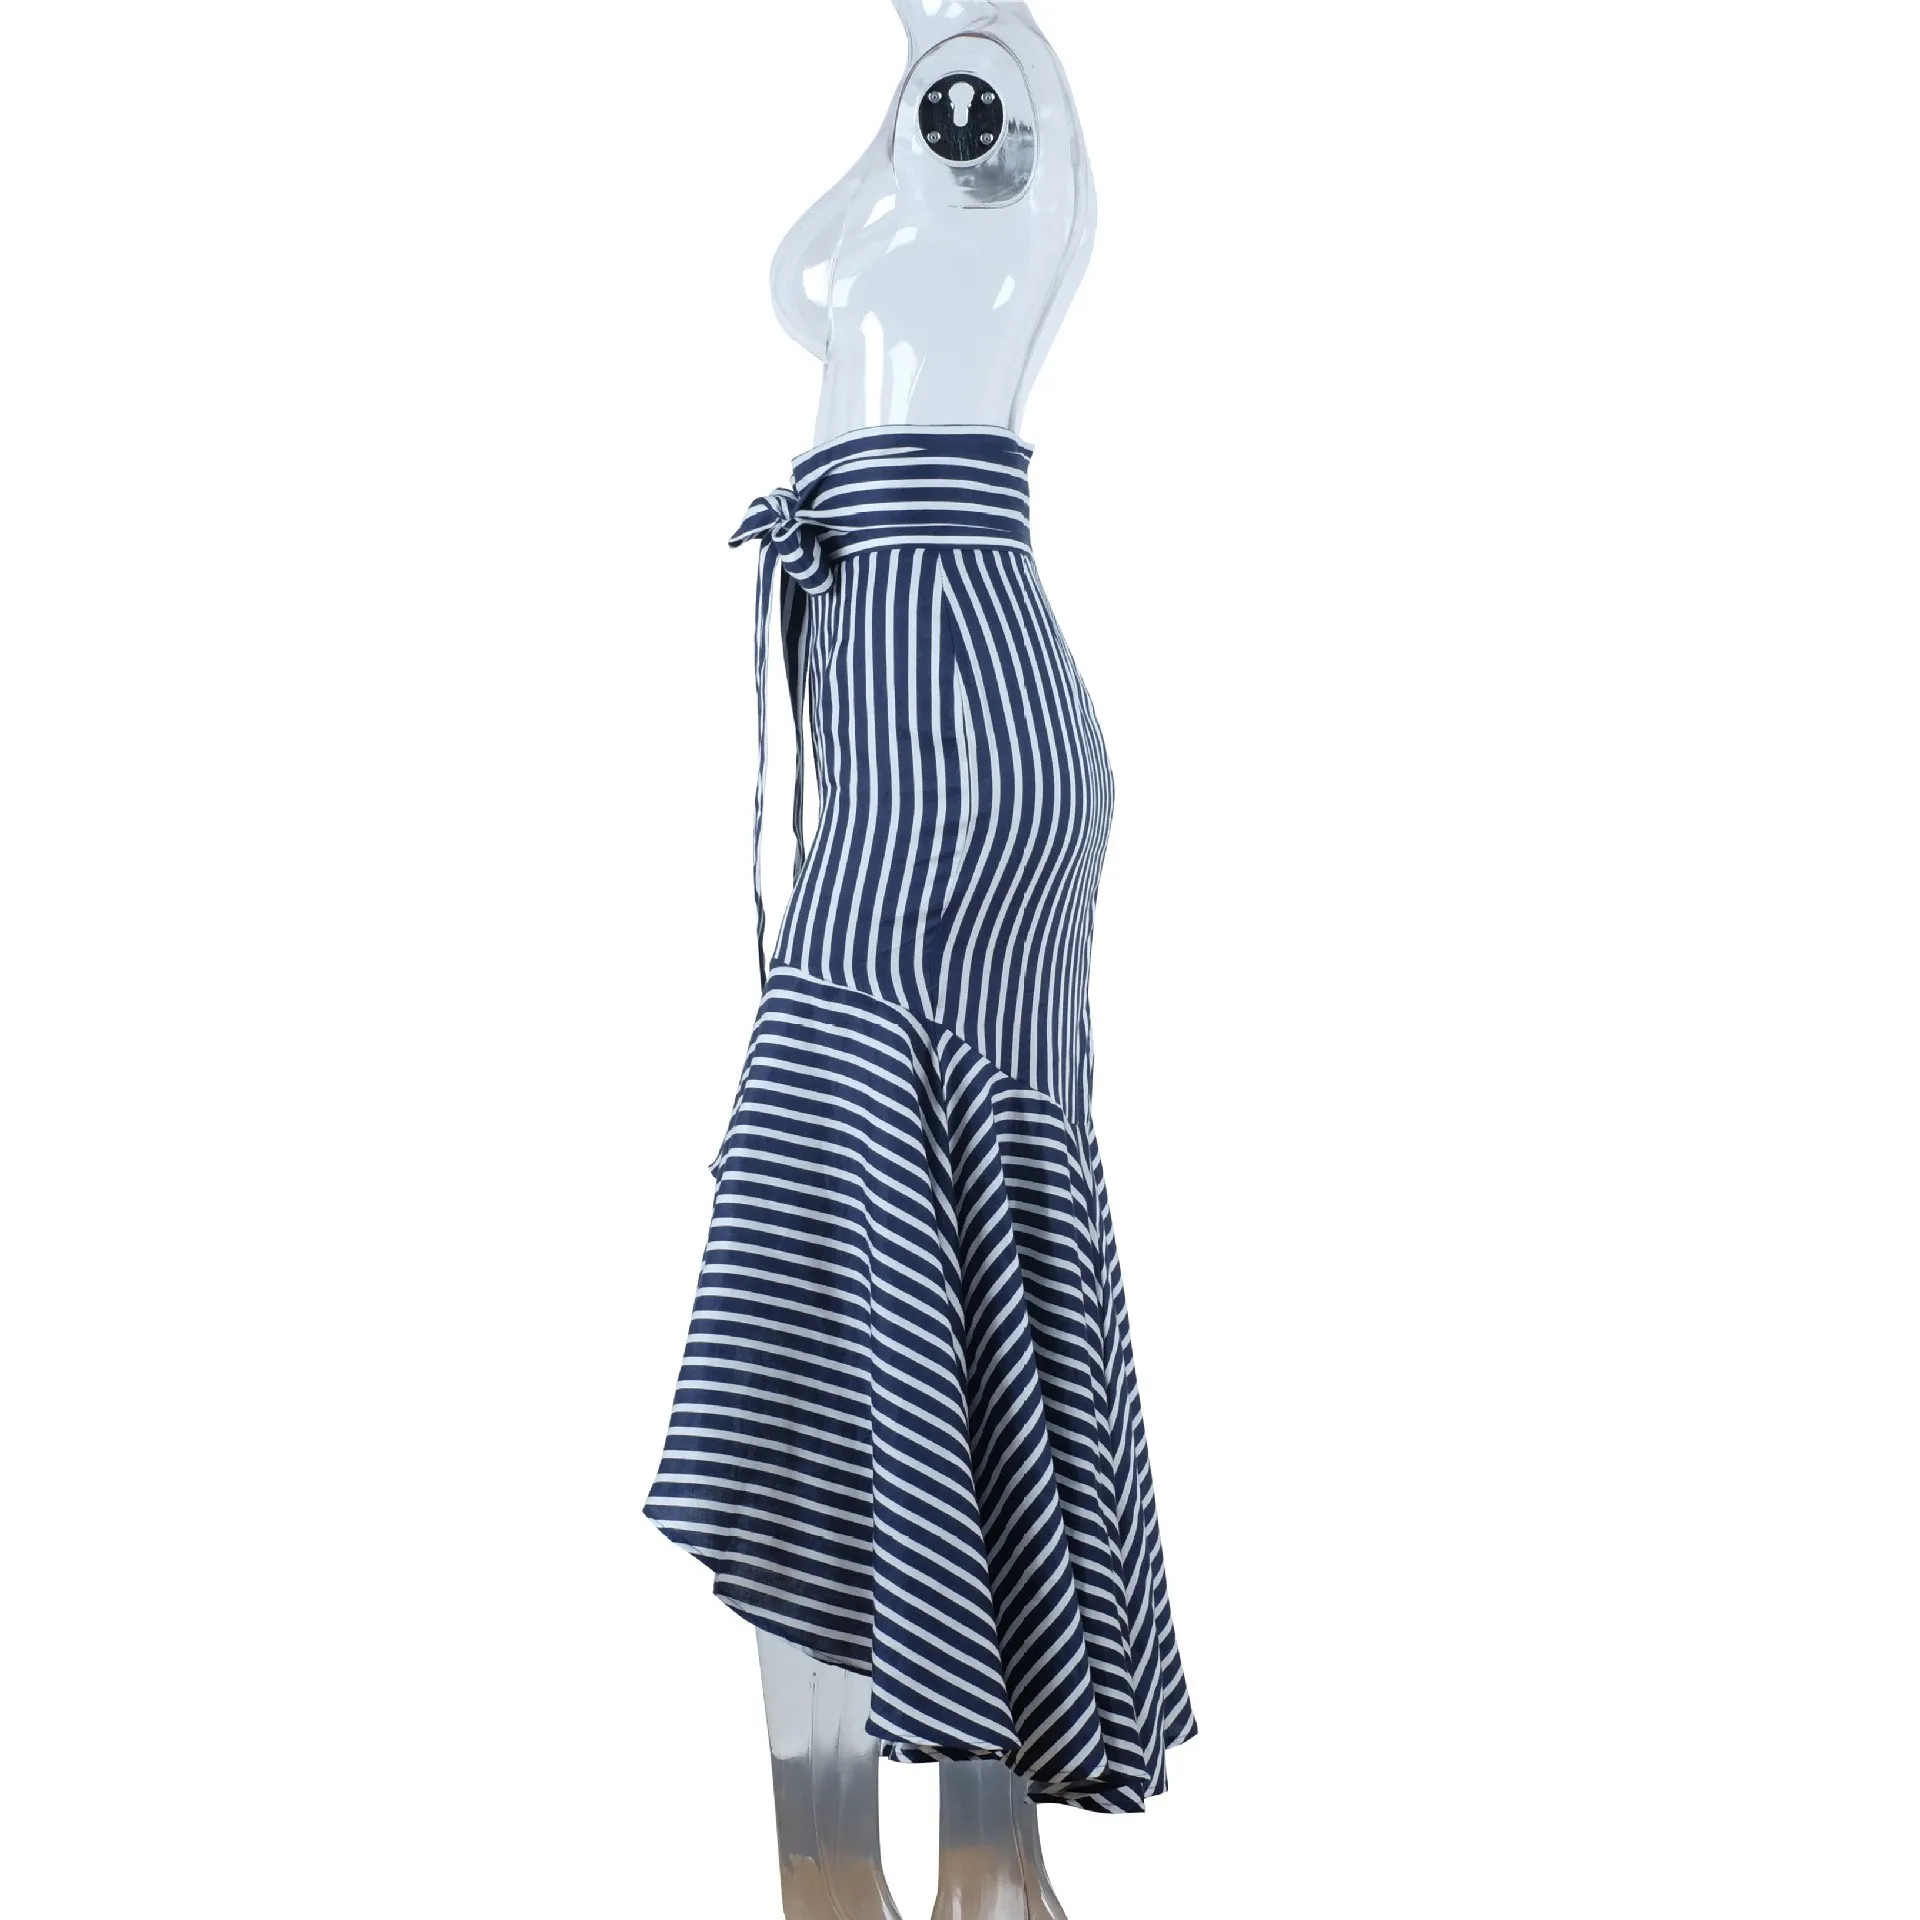 Женская длинная юбка в стиле бохо с оборками, синяя полосатая Асимметричная юбка с завышенной талией, Необычные пляжные юбки с поясом-бабочкой